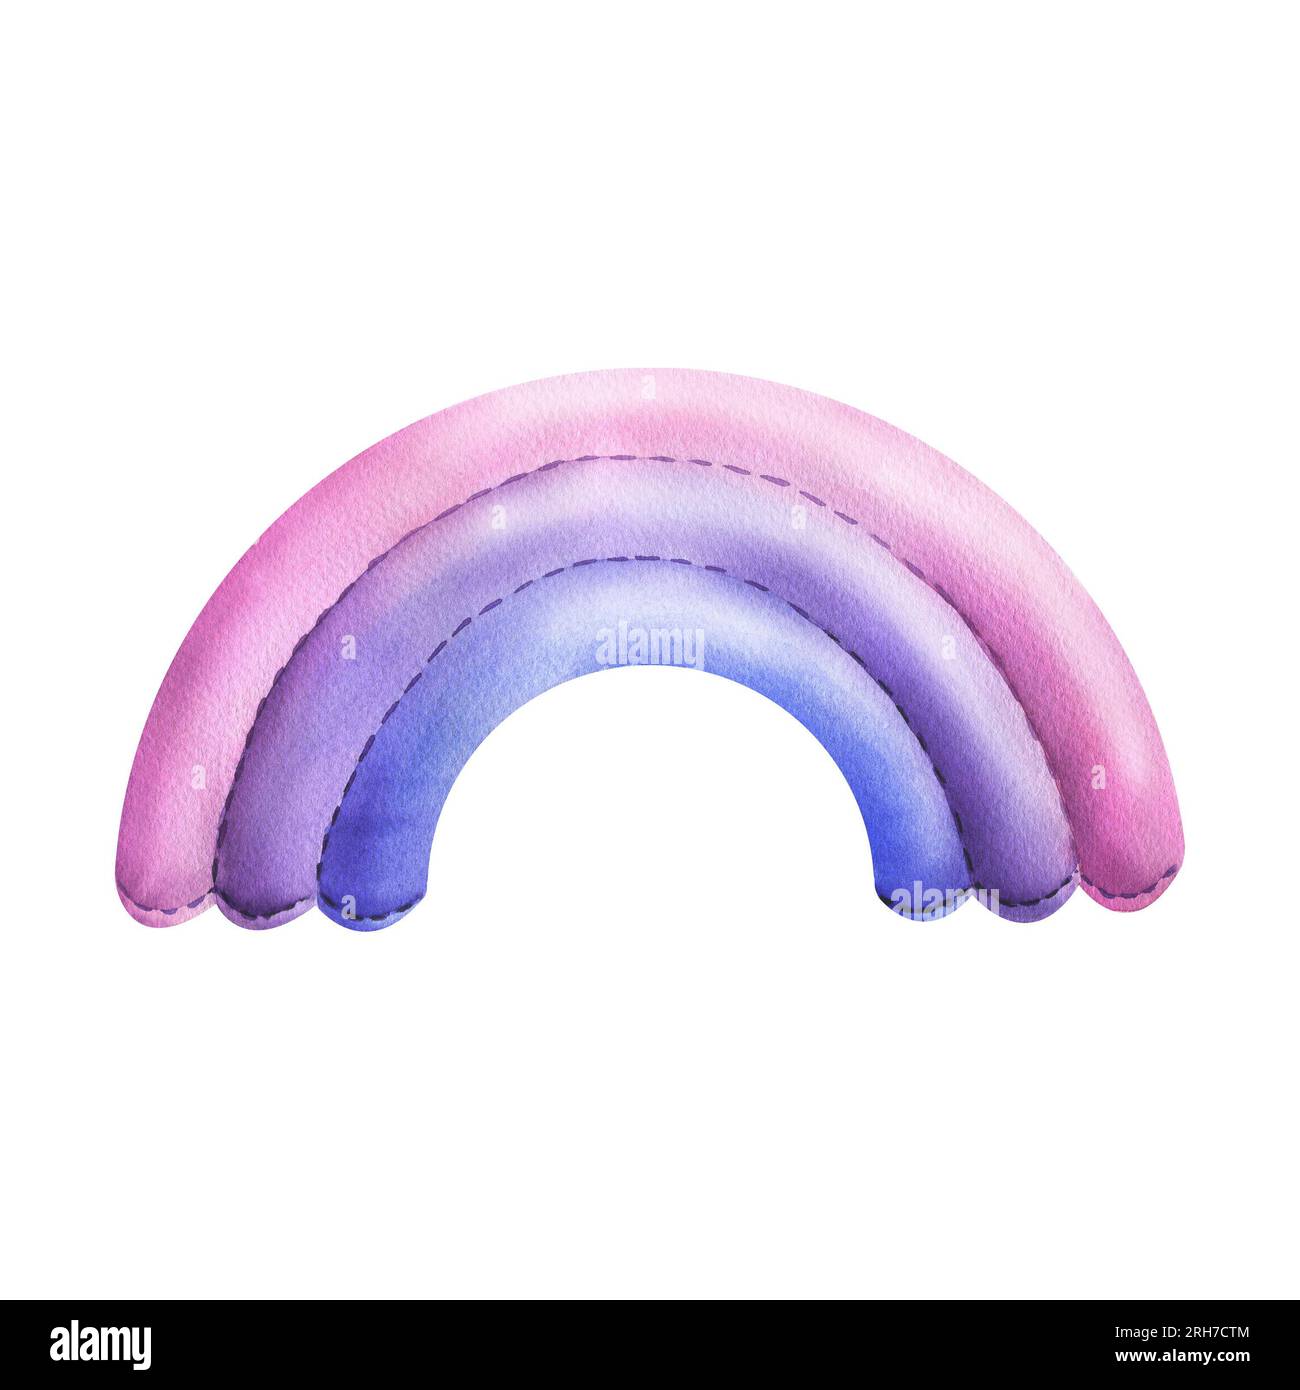 Viene stampato un arcobaleno di blu, rosa e viola cucito in tessuto con cuciture a filo. Illustrazione ad acquerello disegnata a mano per la stanza dei bambini, poster Foto Stock